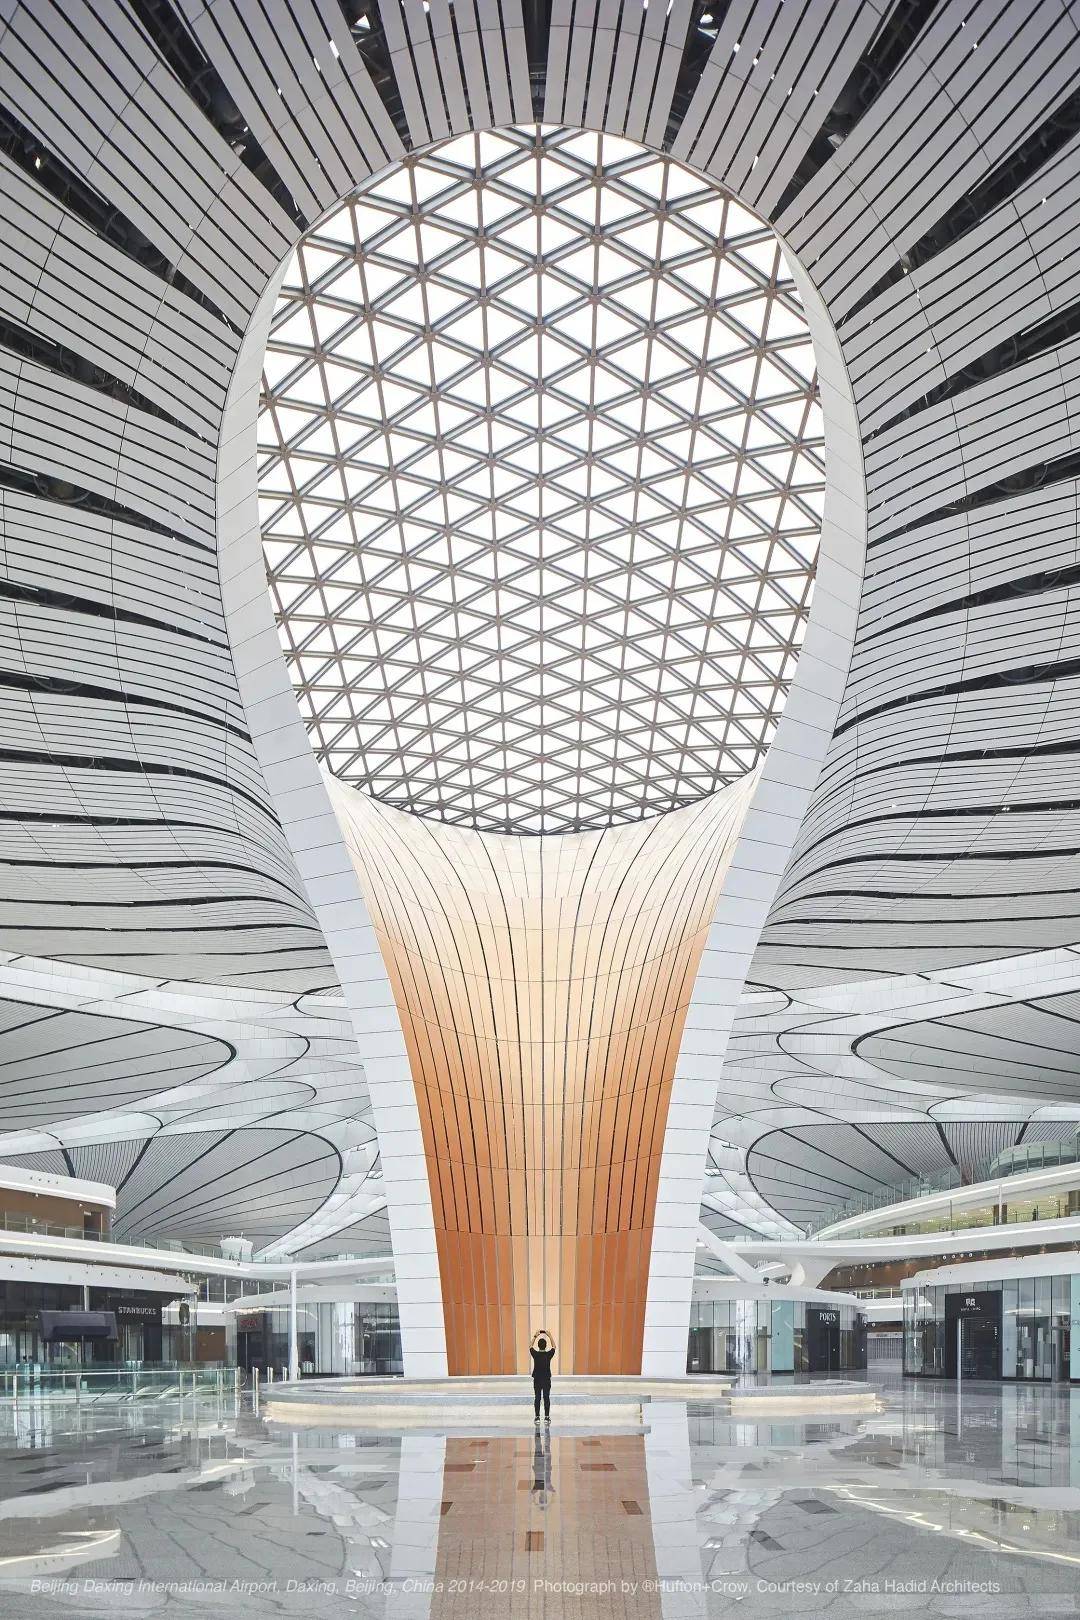 北京大兴国际机场,北京,中国,2014-2019